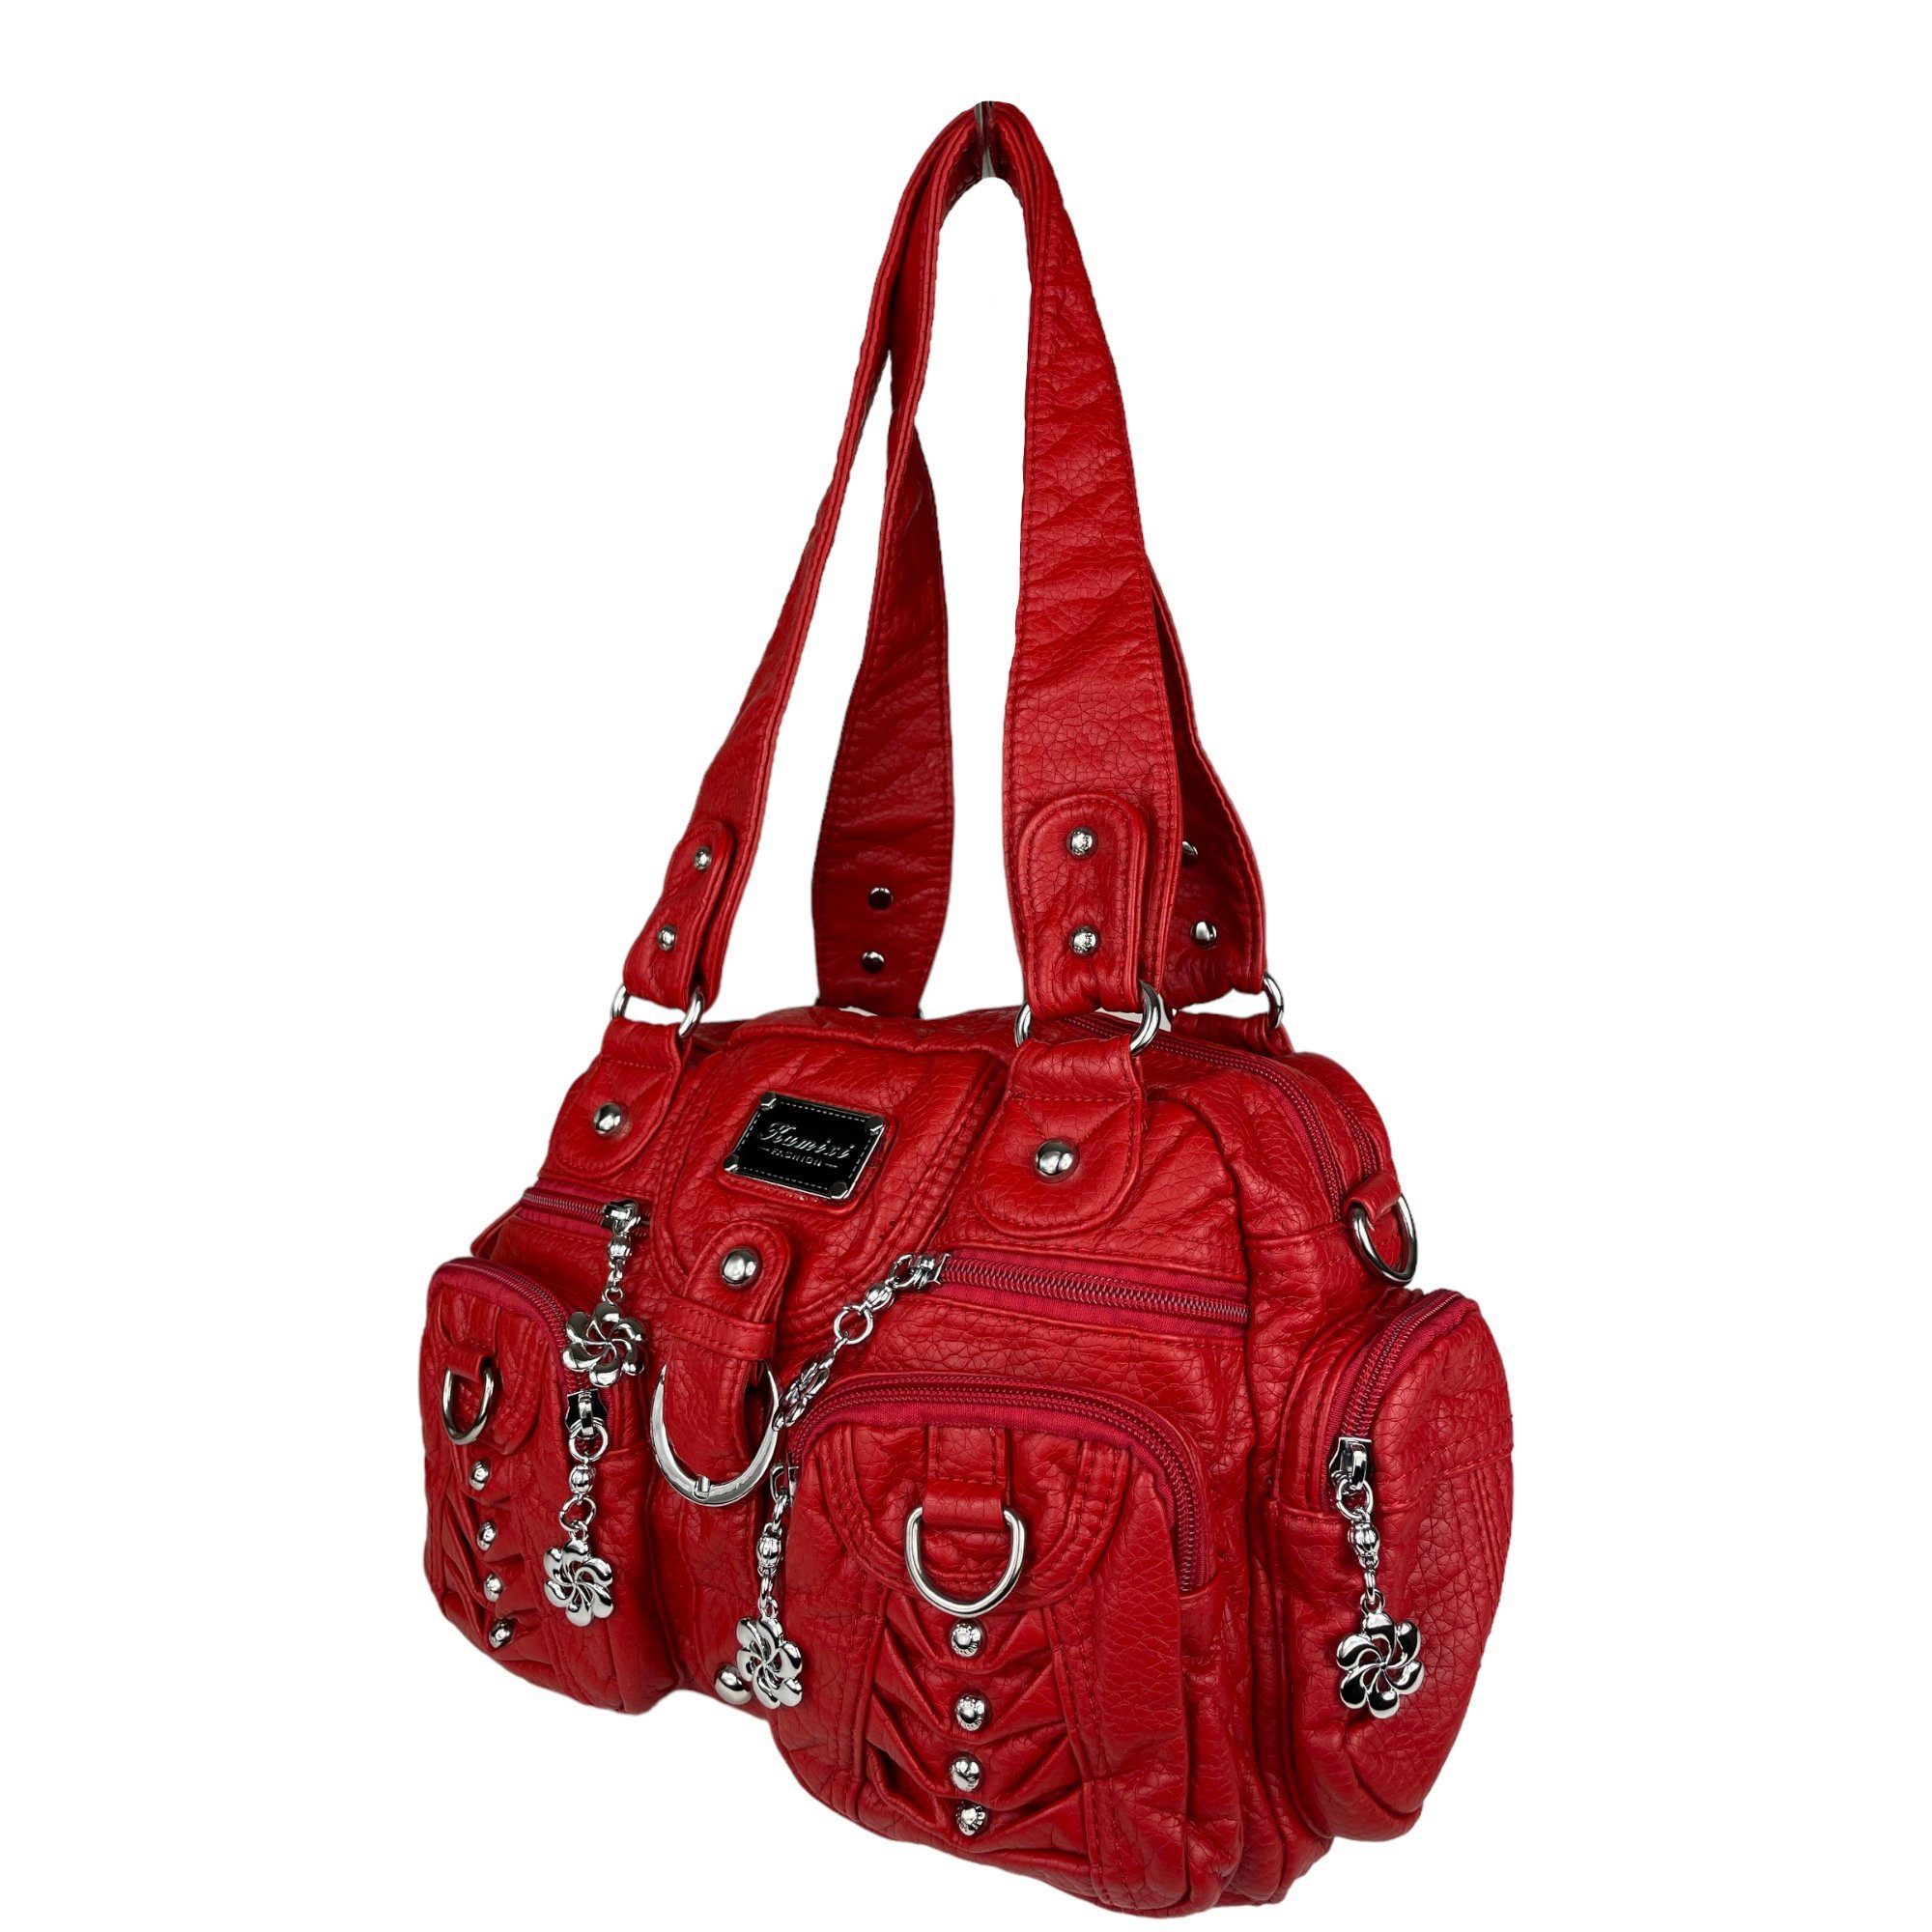 rot (Schultertasche) mit Fächer, viele Schulterriemen abnehmbarer Taschen4life verstellbarer klassische Schultertasche Damen Handtasche Nieten AKW22032,